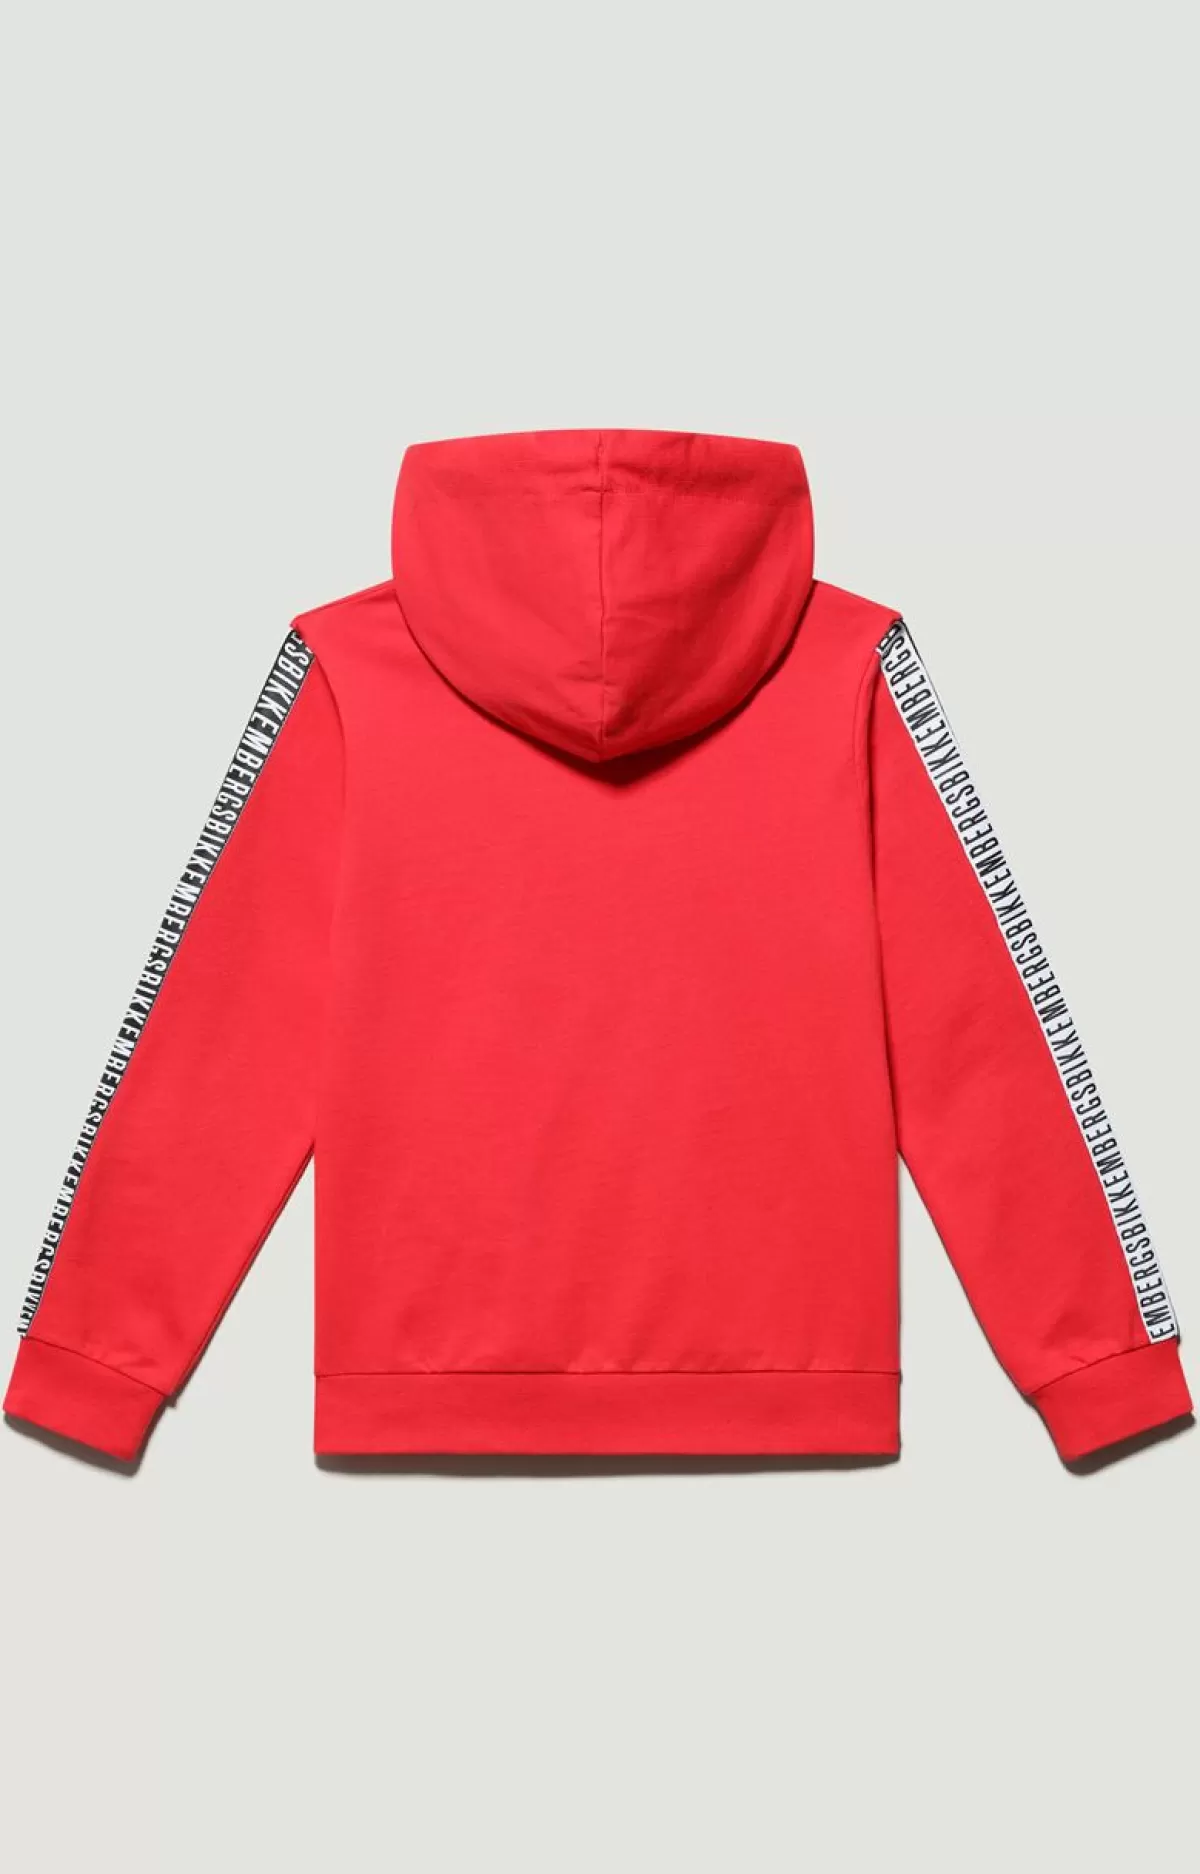 Bikkembergs Boys' Hoodie Sweatshirt Poppy Red Flash Sale